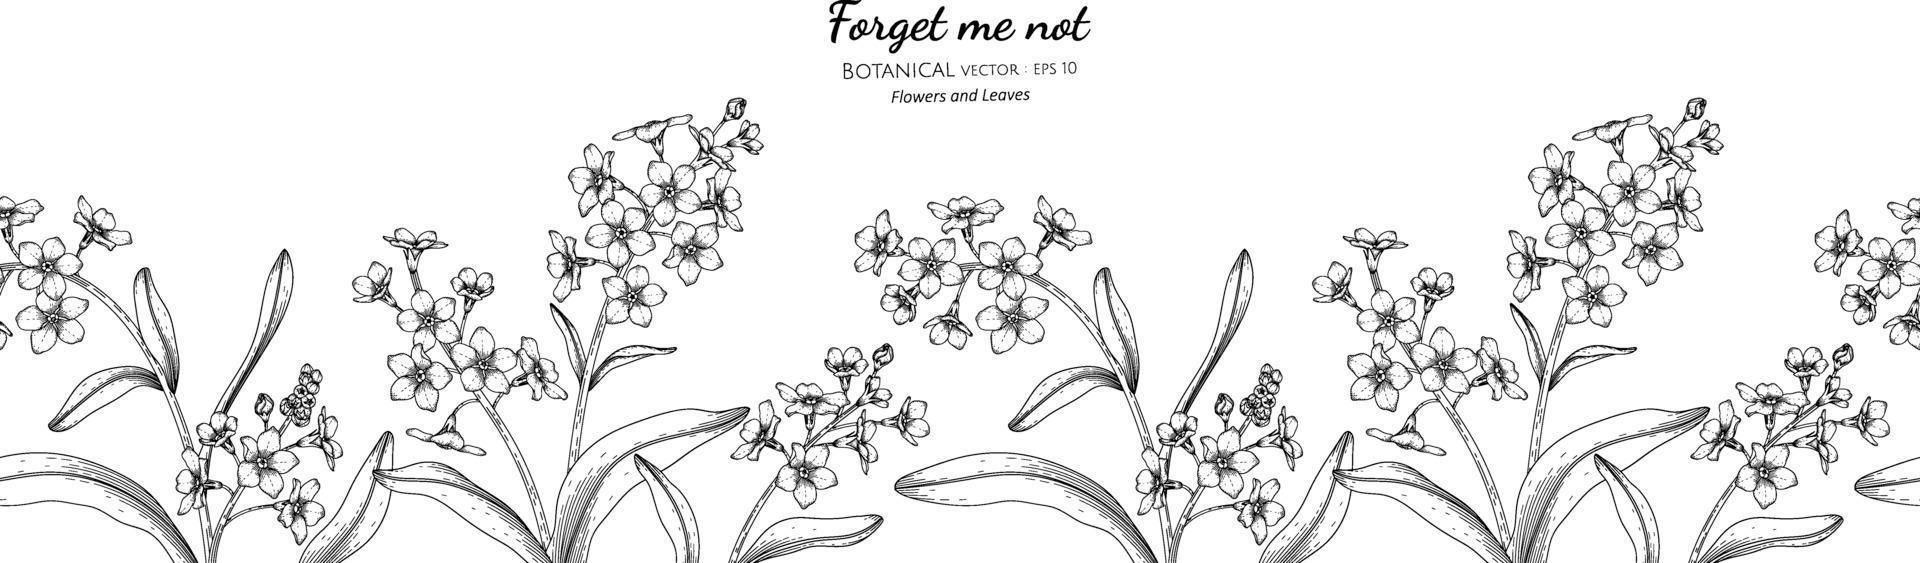 naadloze patroon vergeet me niet bloem en blad hand getrokken botanische illustratie met lijntekeningen. vector